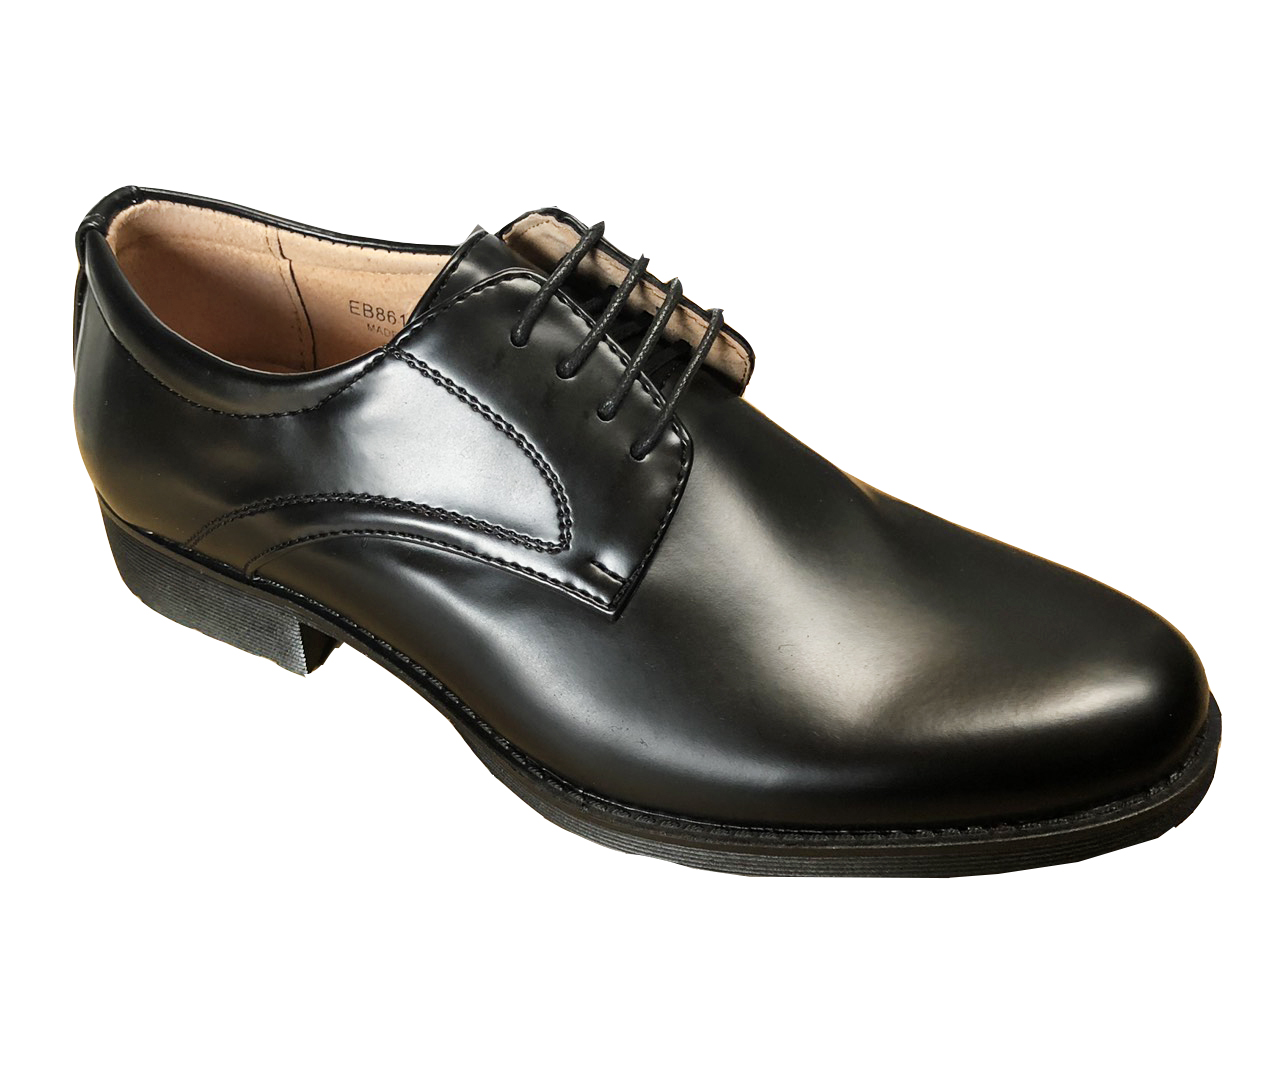 Mens Smart Shoes, 黑色-26cm, large